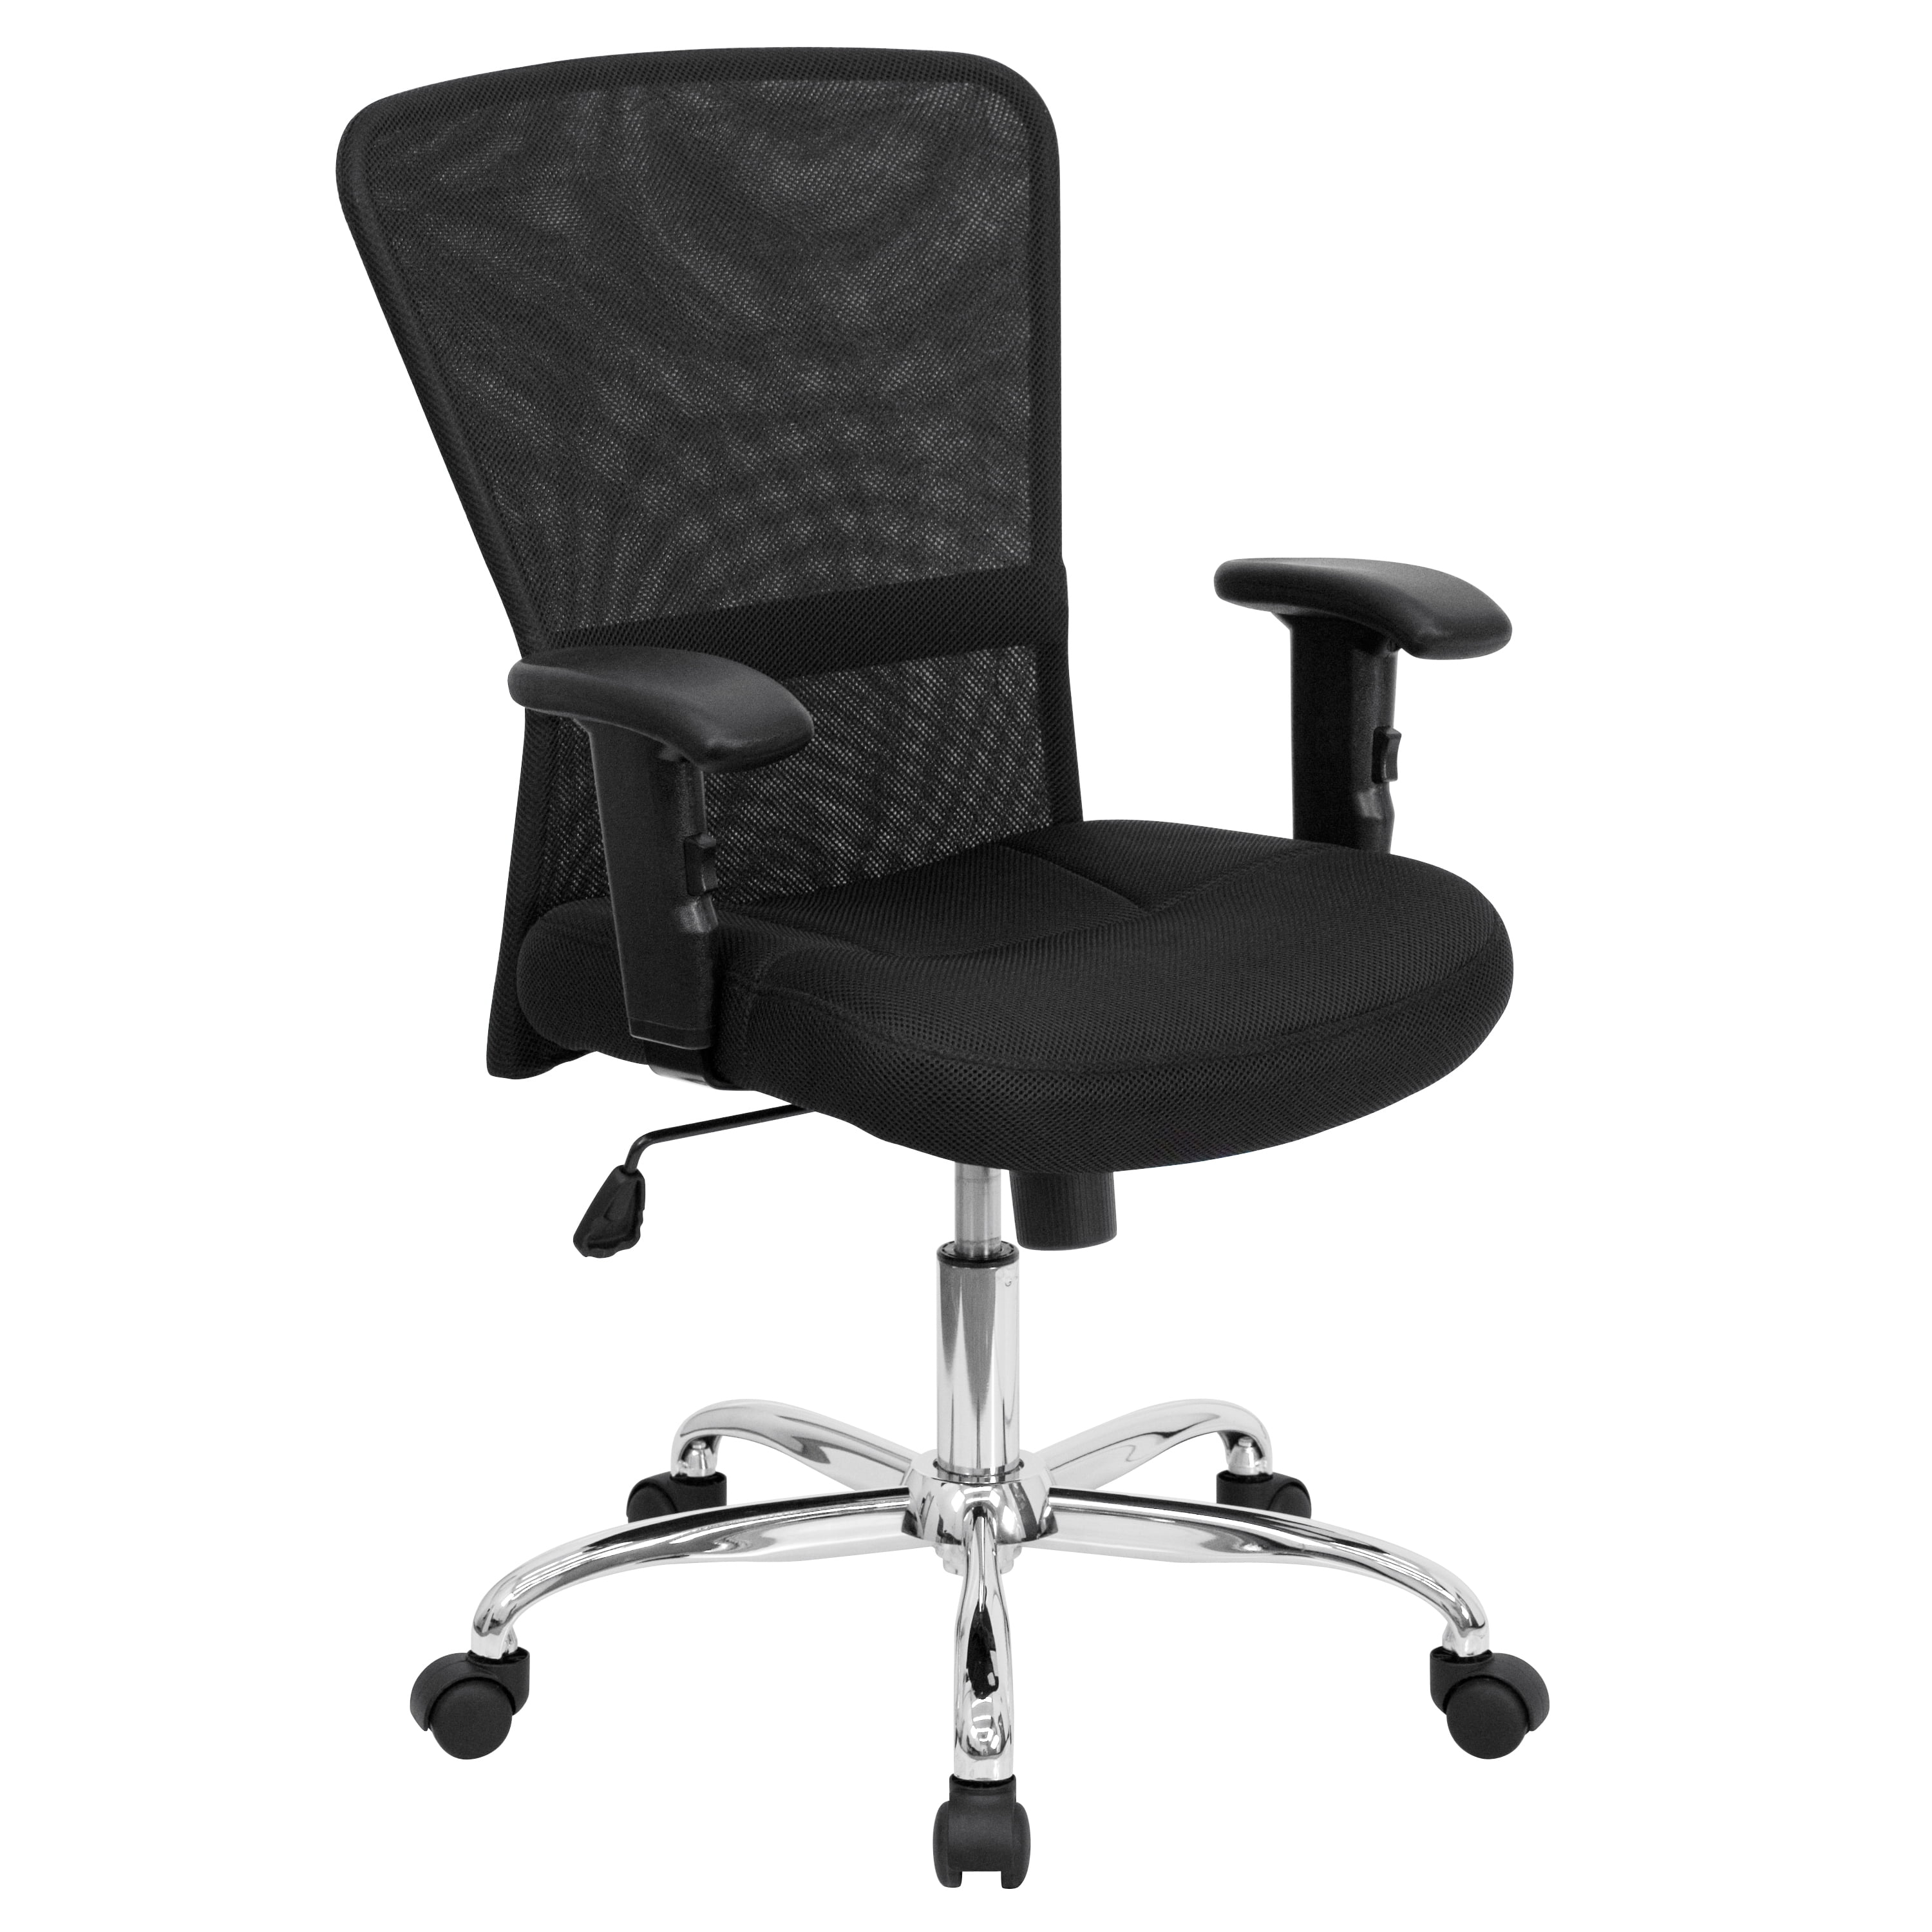 Стул офисный хромированный. Кресло budget e-279. КРК кресло budget New (QZY-k3) 51*51h120 2*2 (ткань,черн). Кресло "budget New". Кресло офисное менеджер.